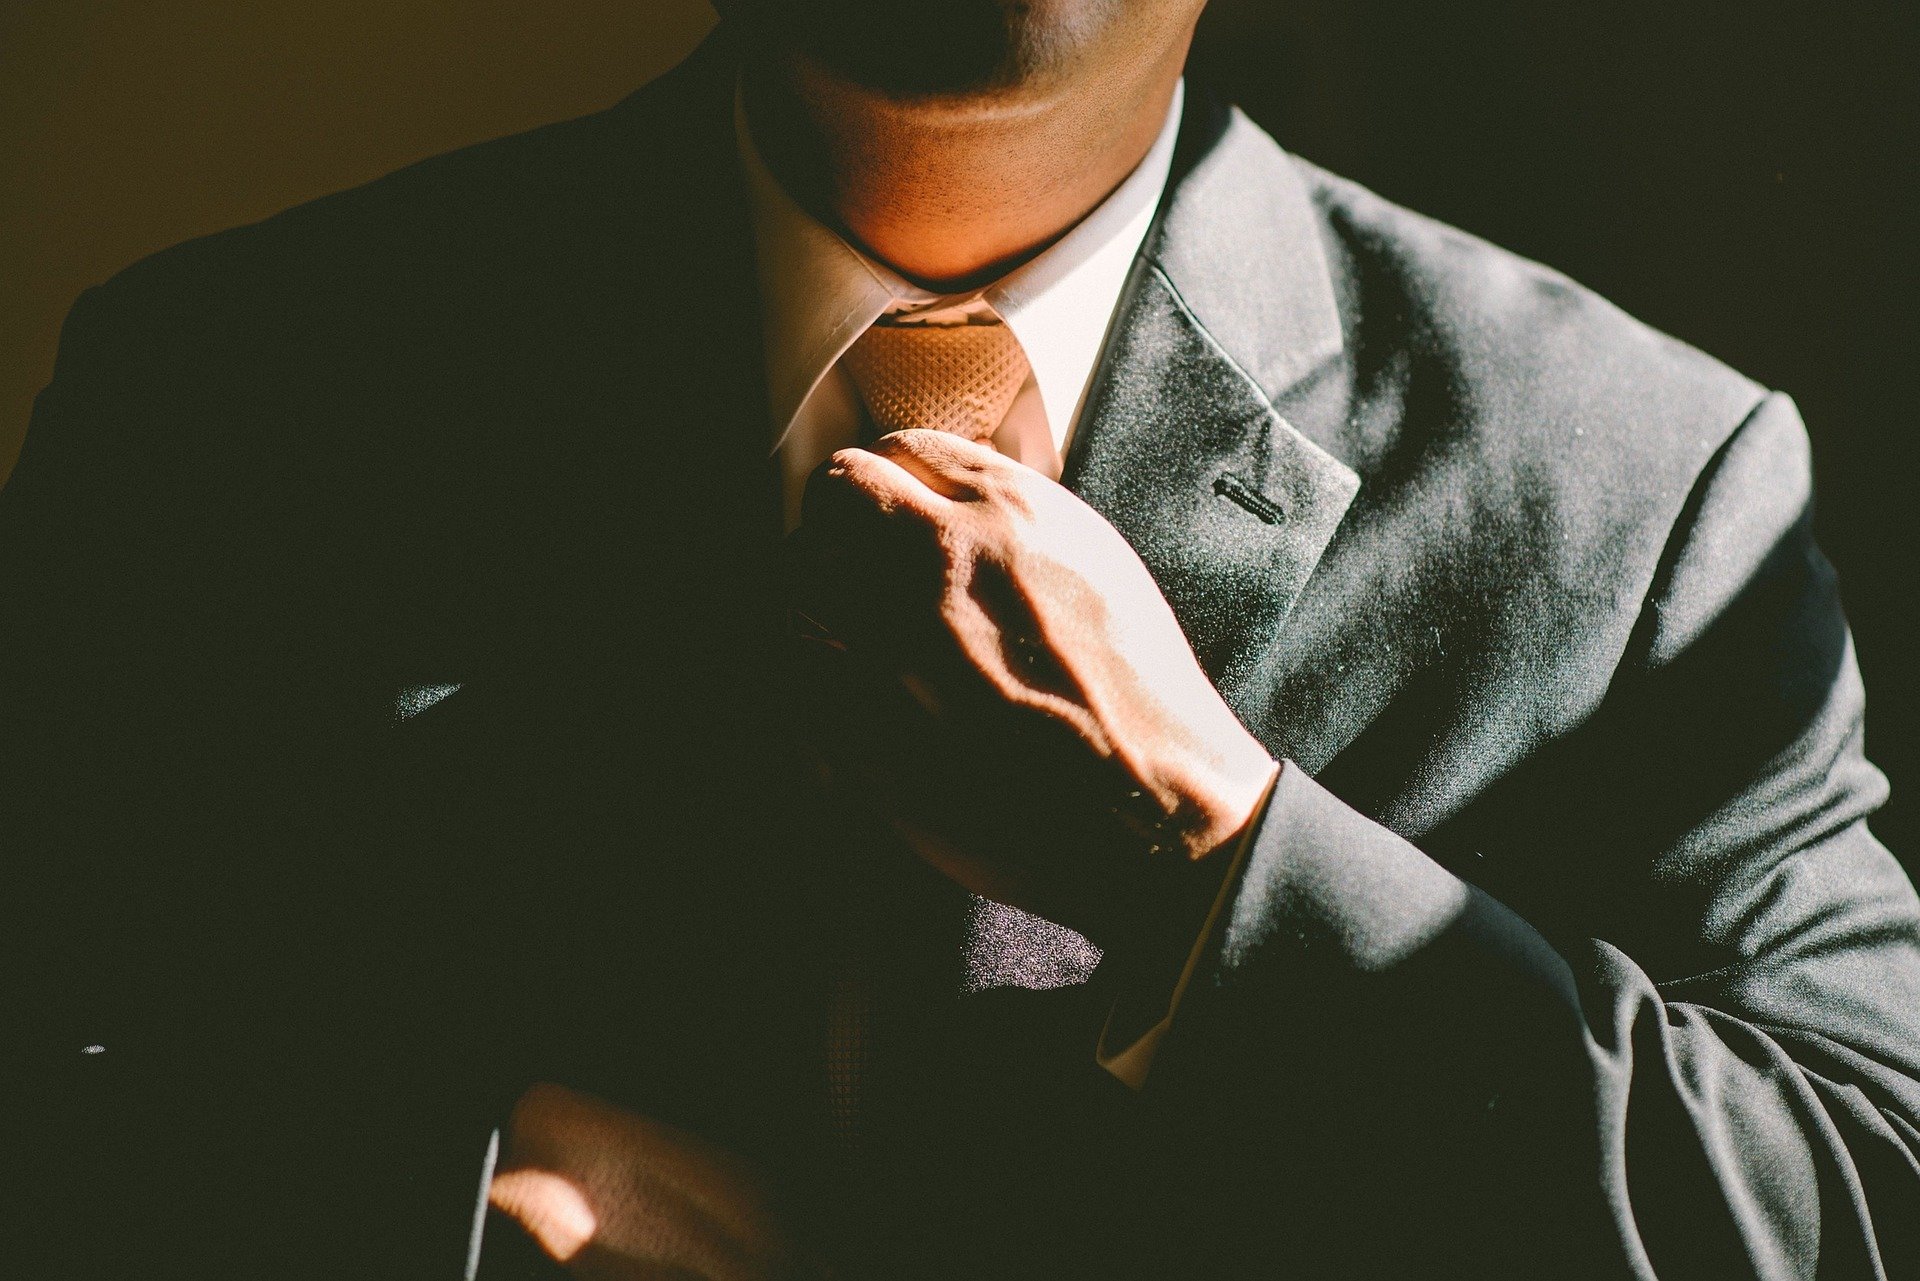 Mann im Anzug; Bildquelle: Pixabay